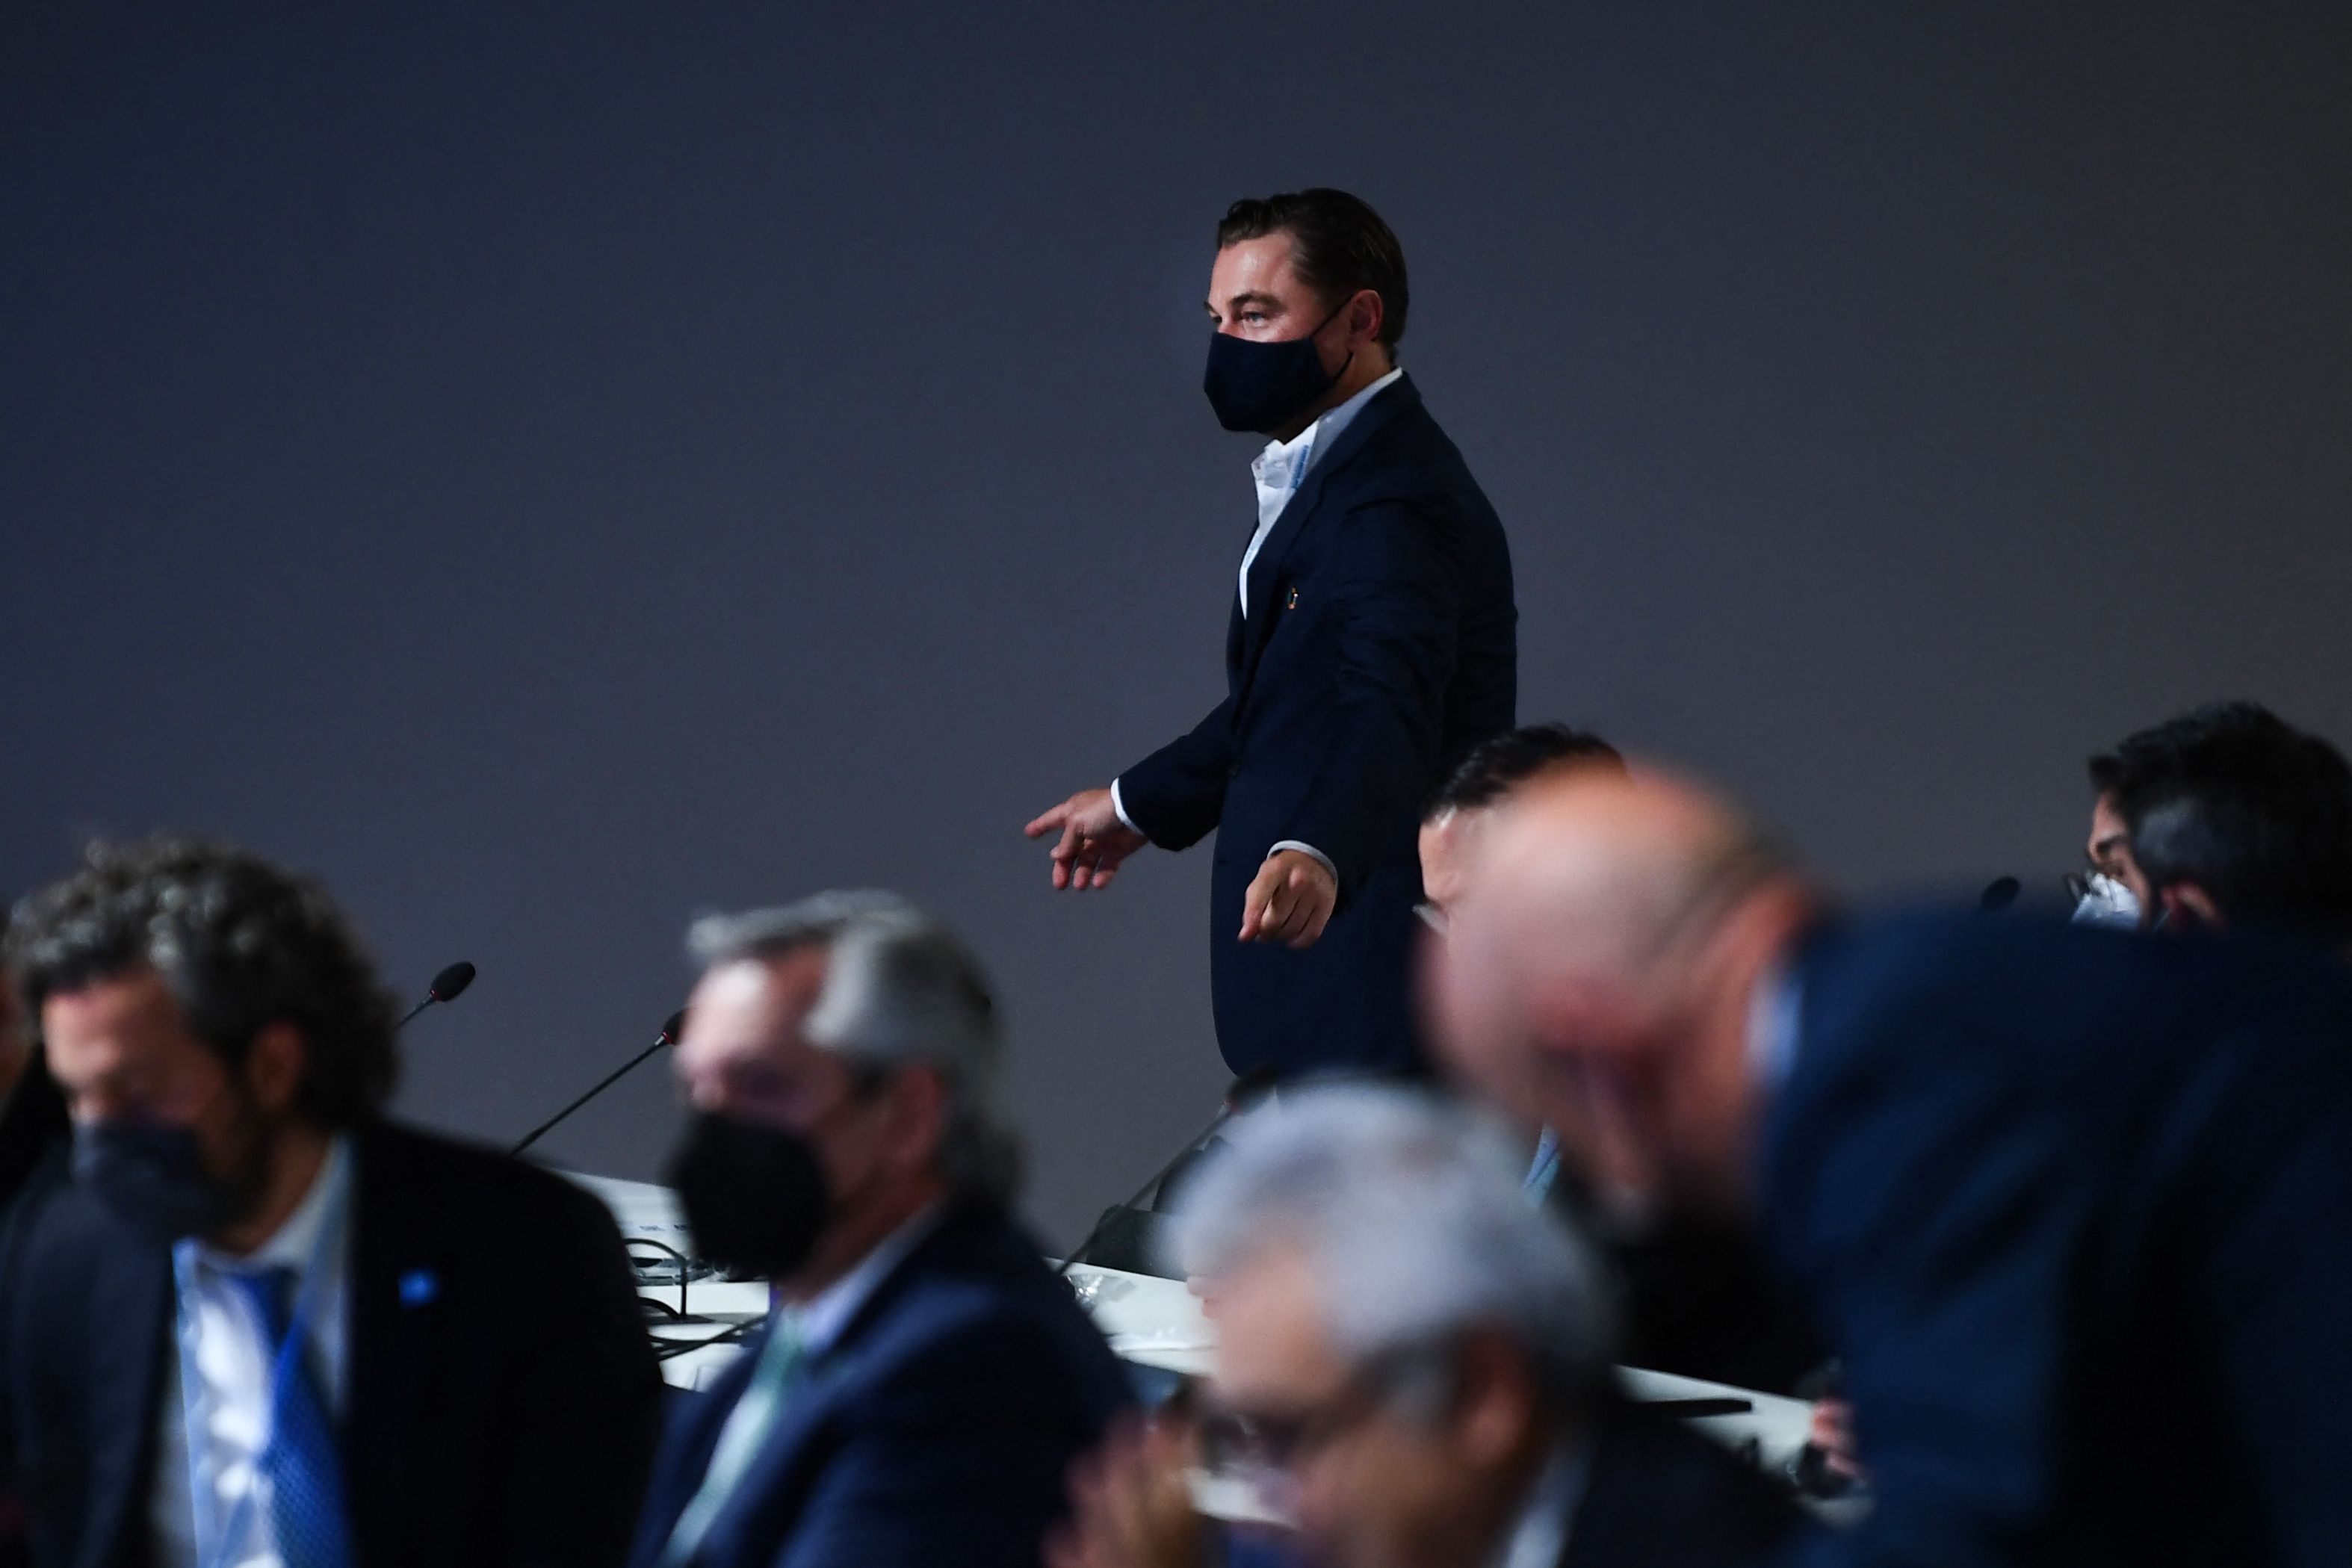 Leonardo DiCaprio durante una reunión, como parte de la Cumbre de Líderes Mundiales de la Conferencia de las Naciones Unidas sobre el Cambio Climático COP26 en Glasgow, Escocia. (Foto Prensa Libre: AFP)